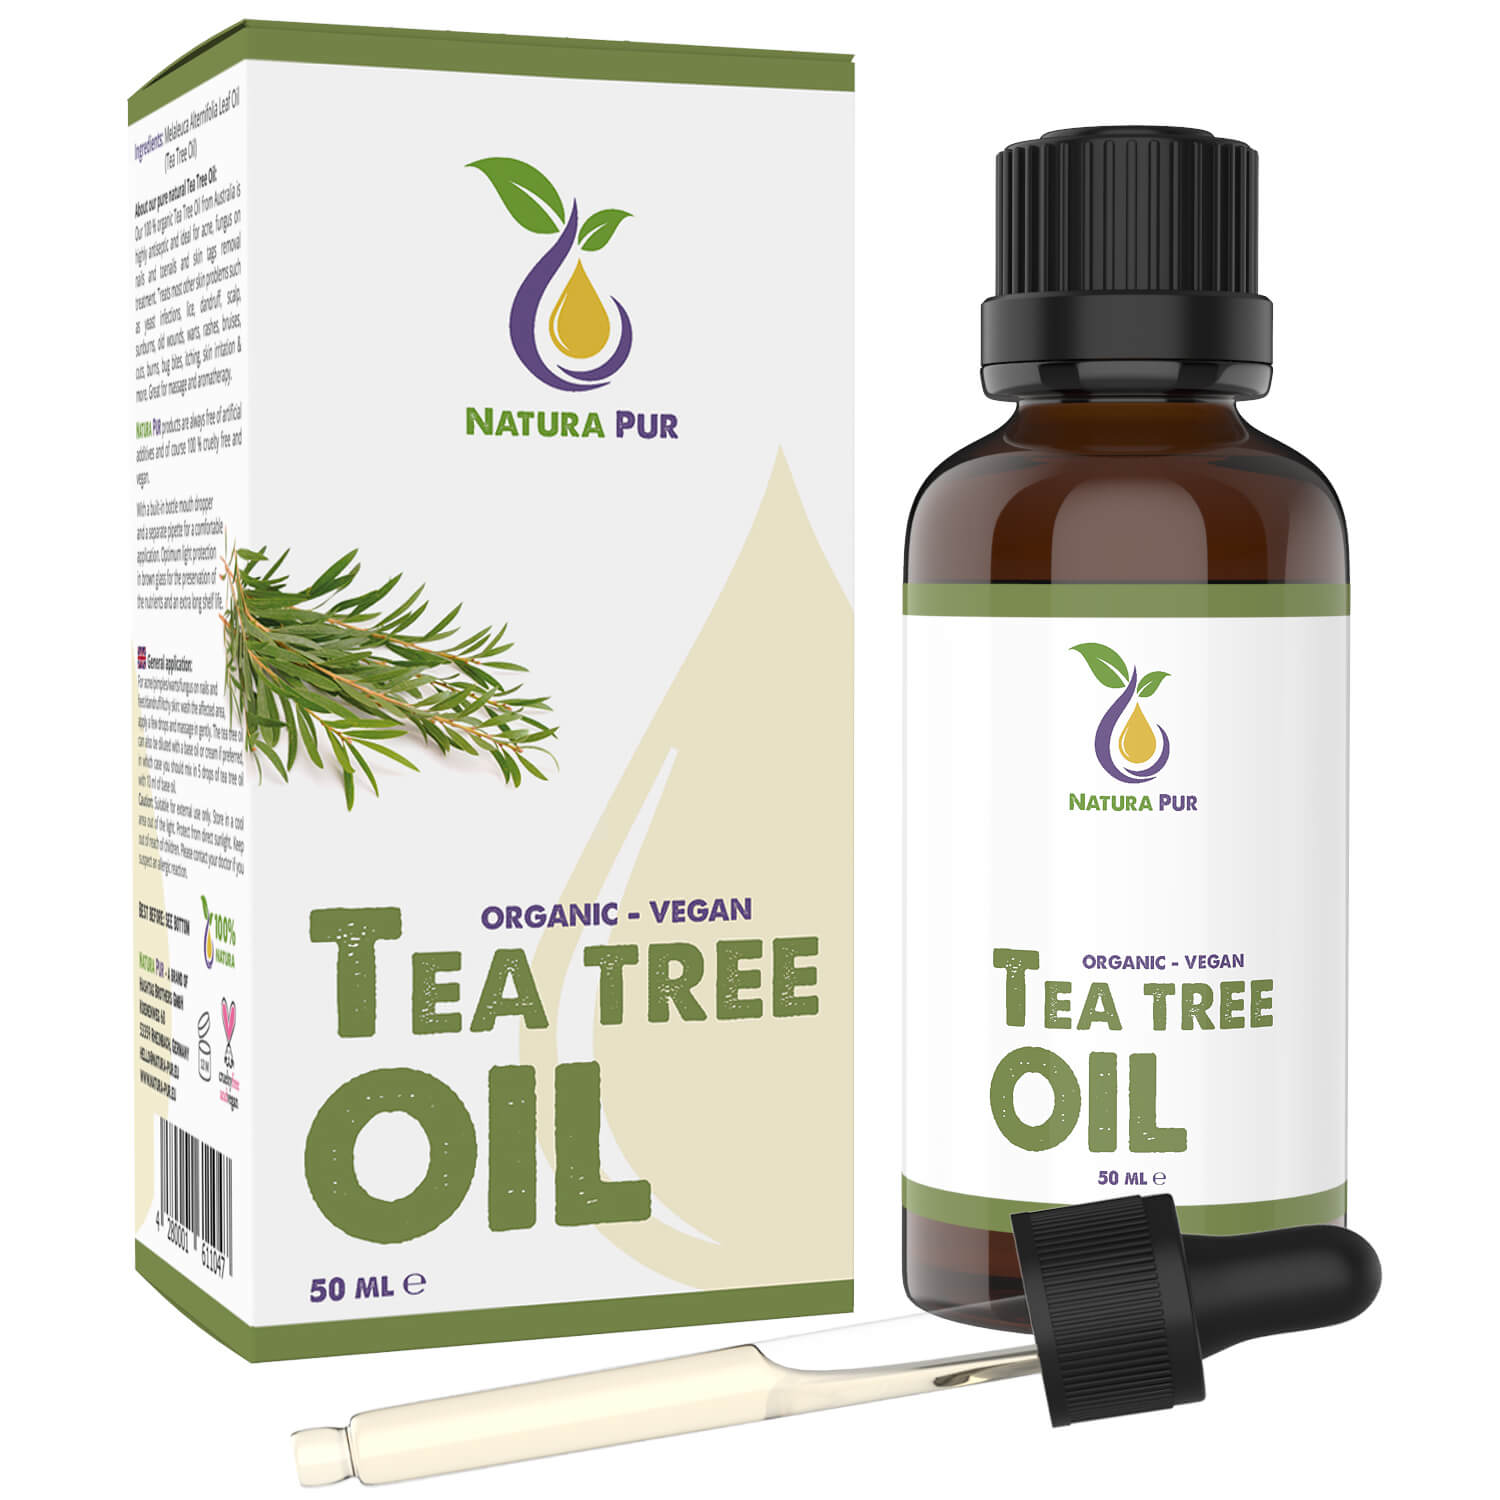 Teebaumöl BIO 50ml mit Pipette - 100% naturreines ätherisches Öl, vegan